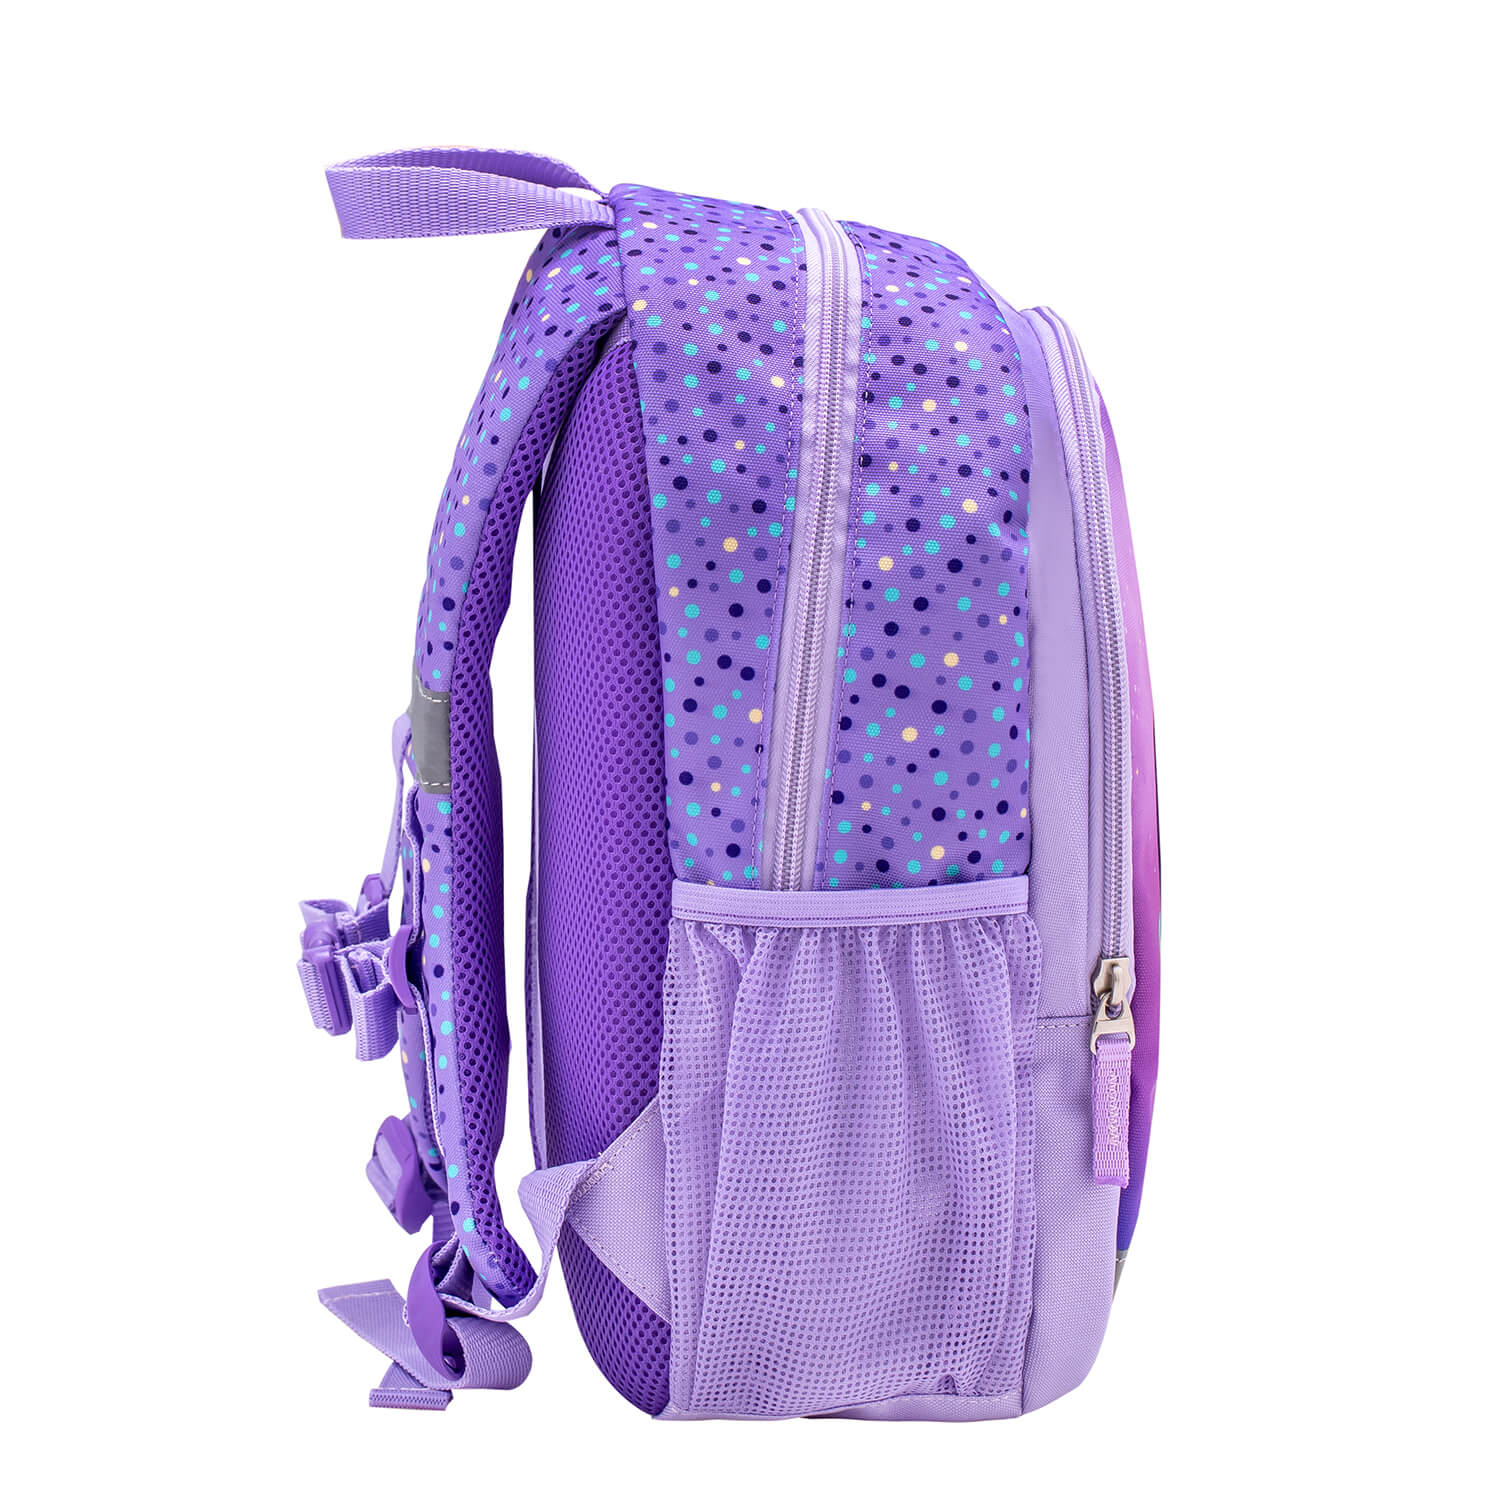 Kiddy Plus Unicorn Purple Kindergarten Bag